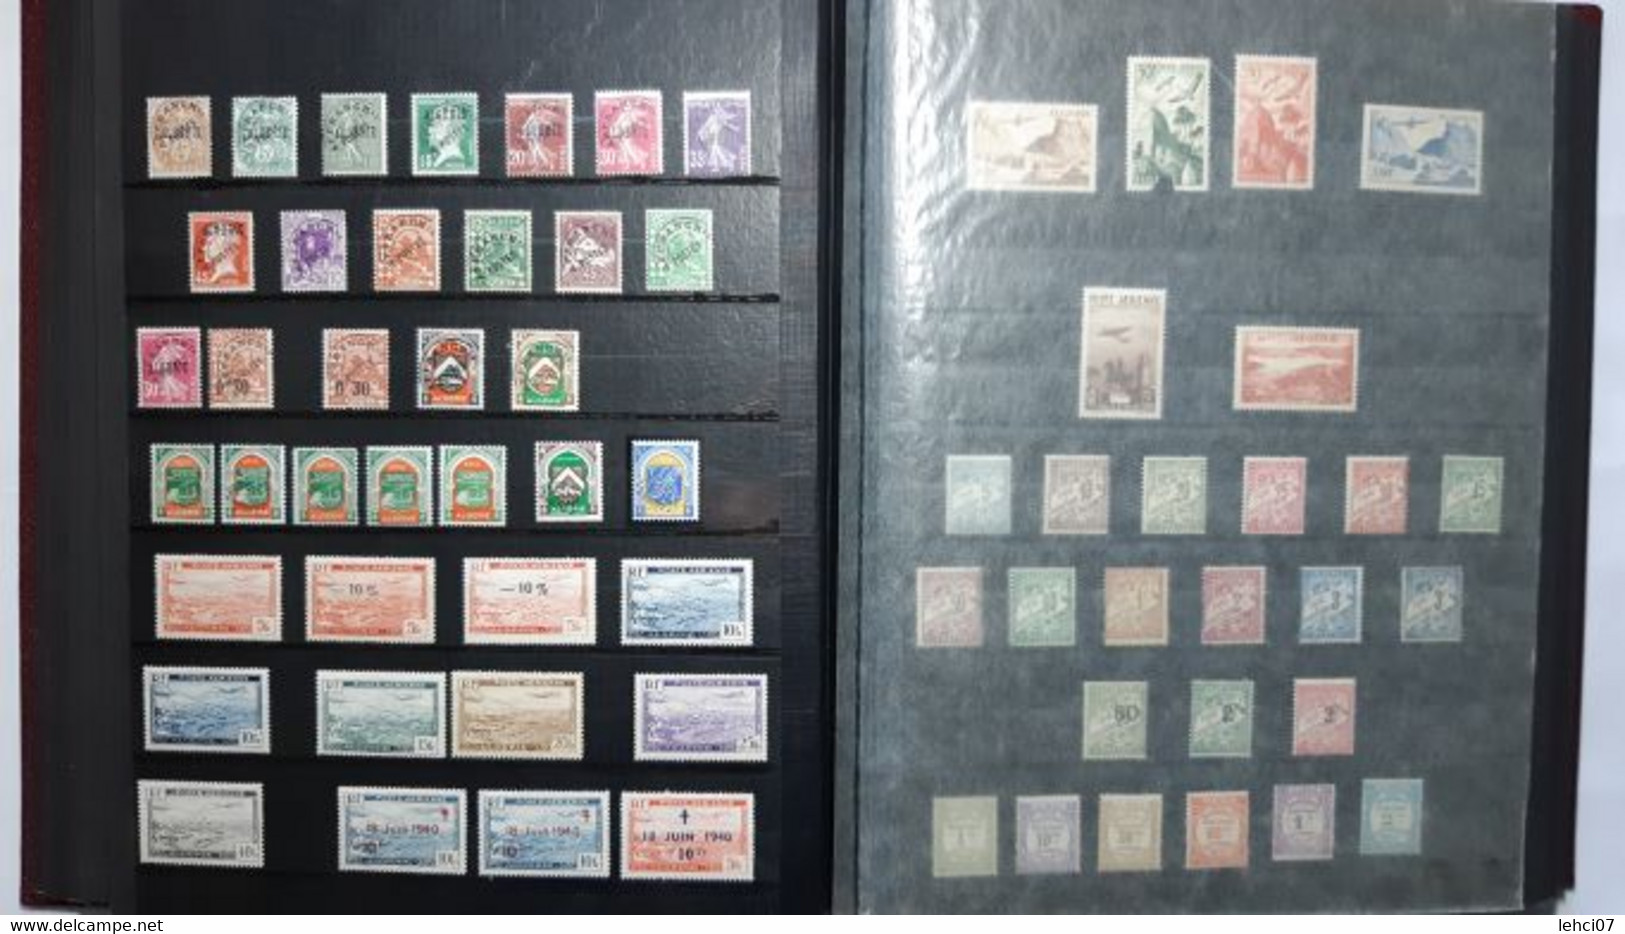 ALGÉRIE Exceptionnelle collection ancienne colonie 580 timbres neufs